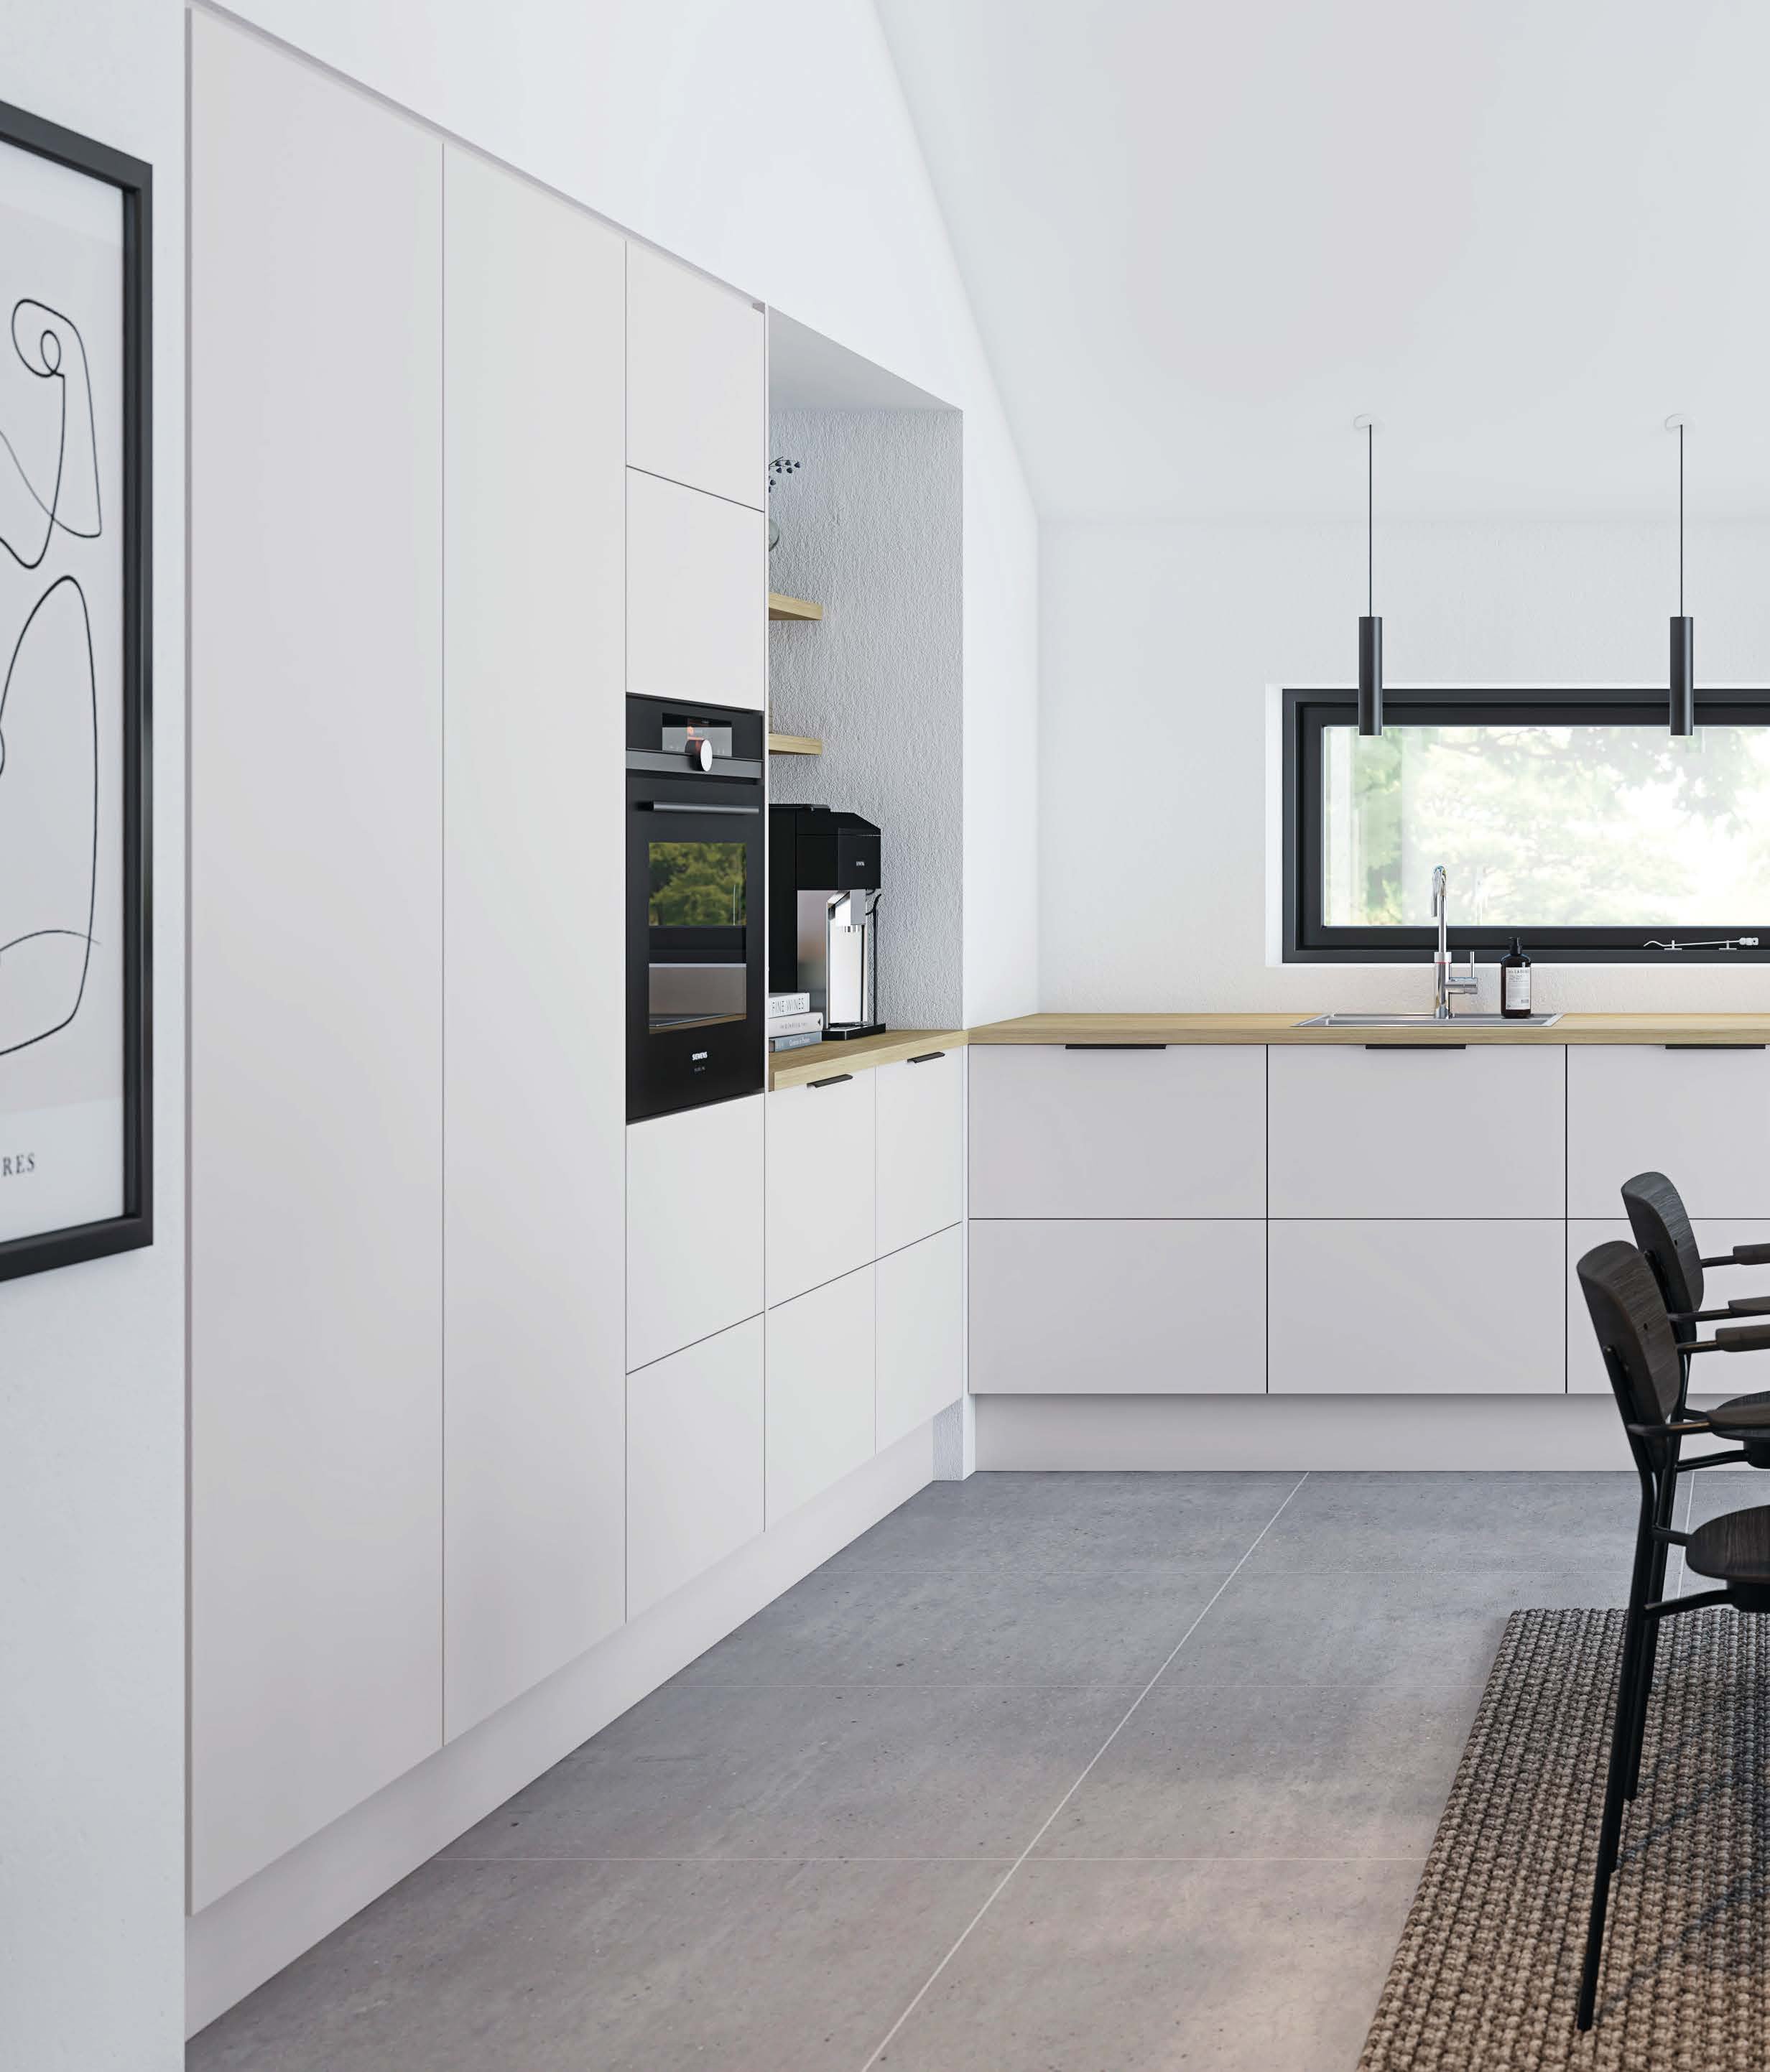 Nyt hvidt minimalistisk Furesø køkken til beboer.jpg